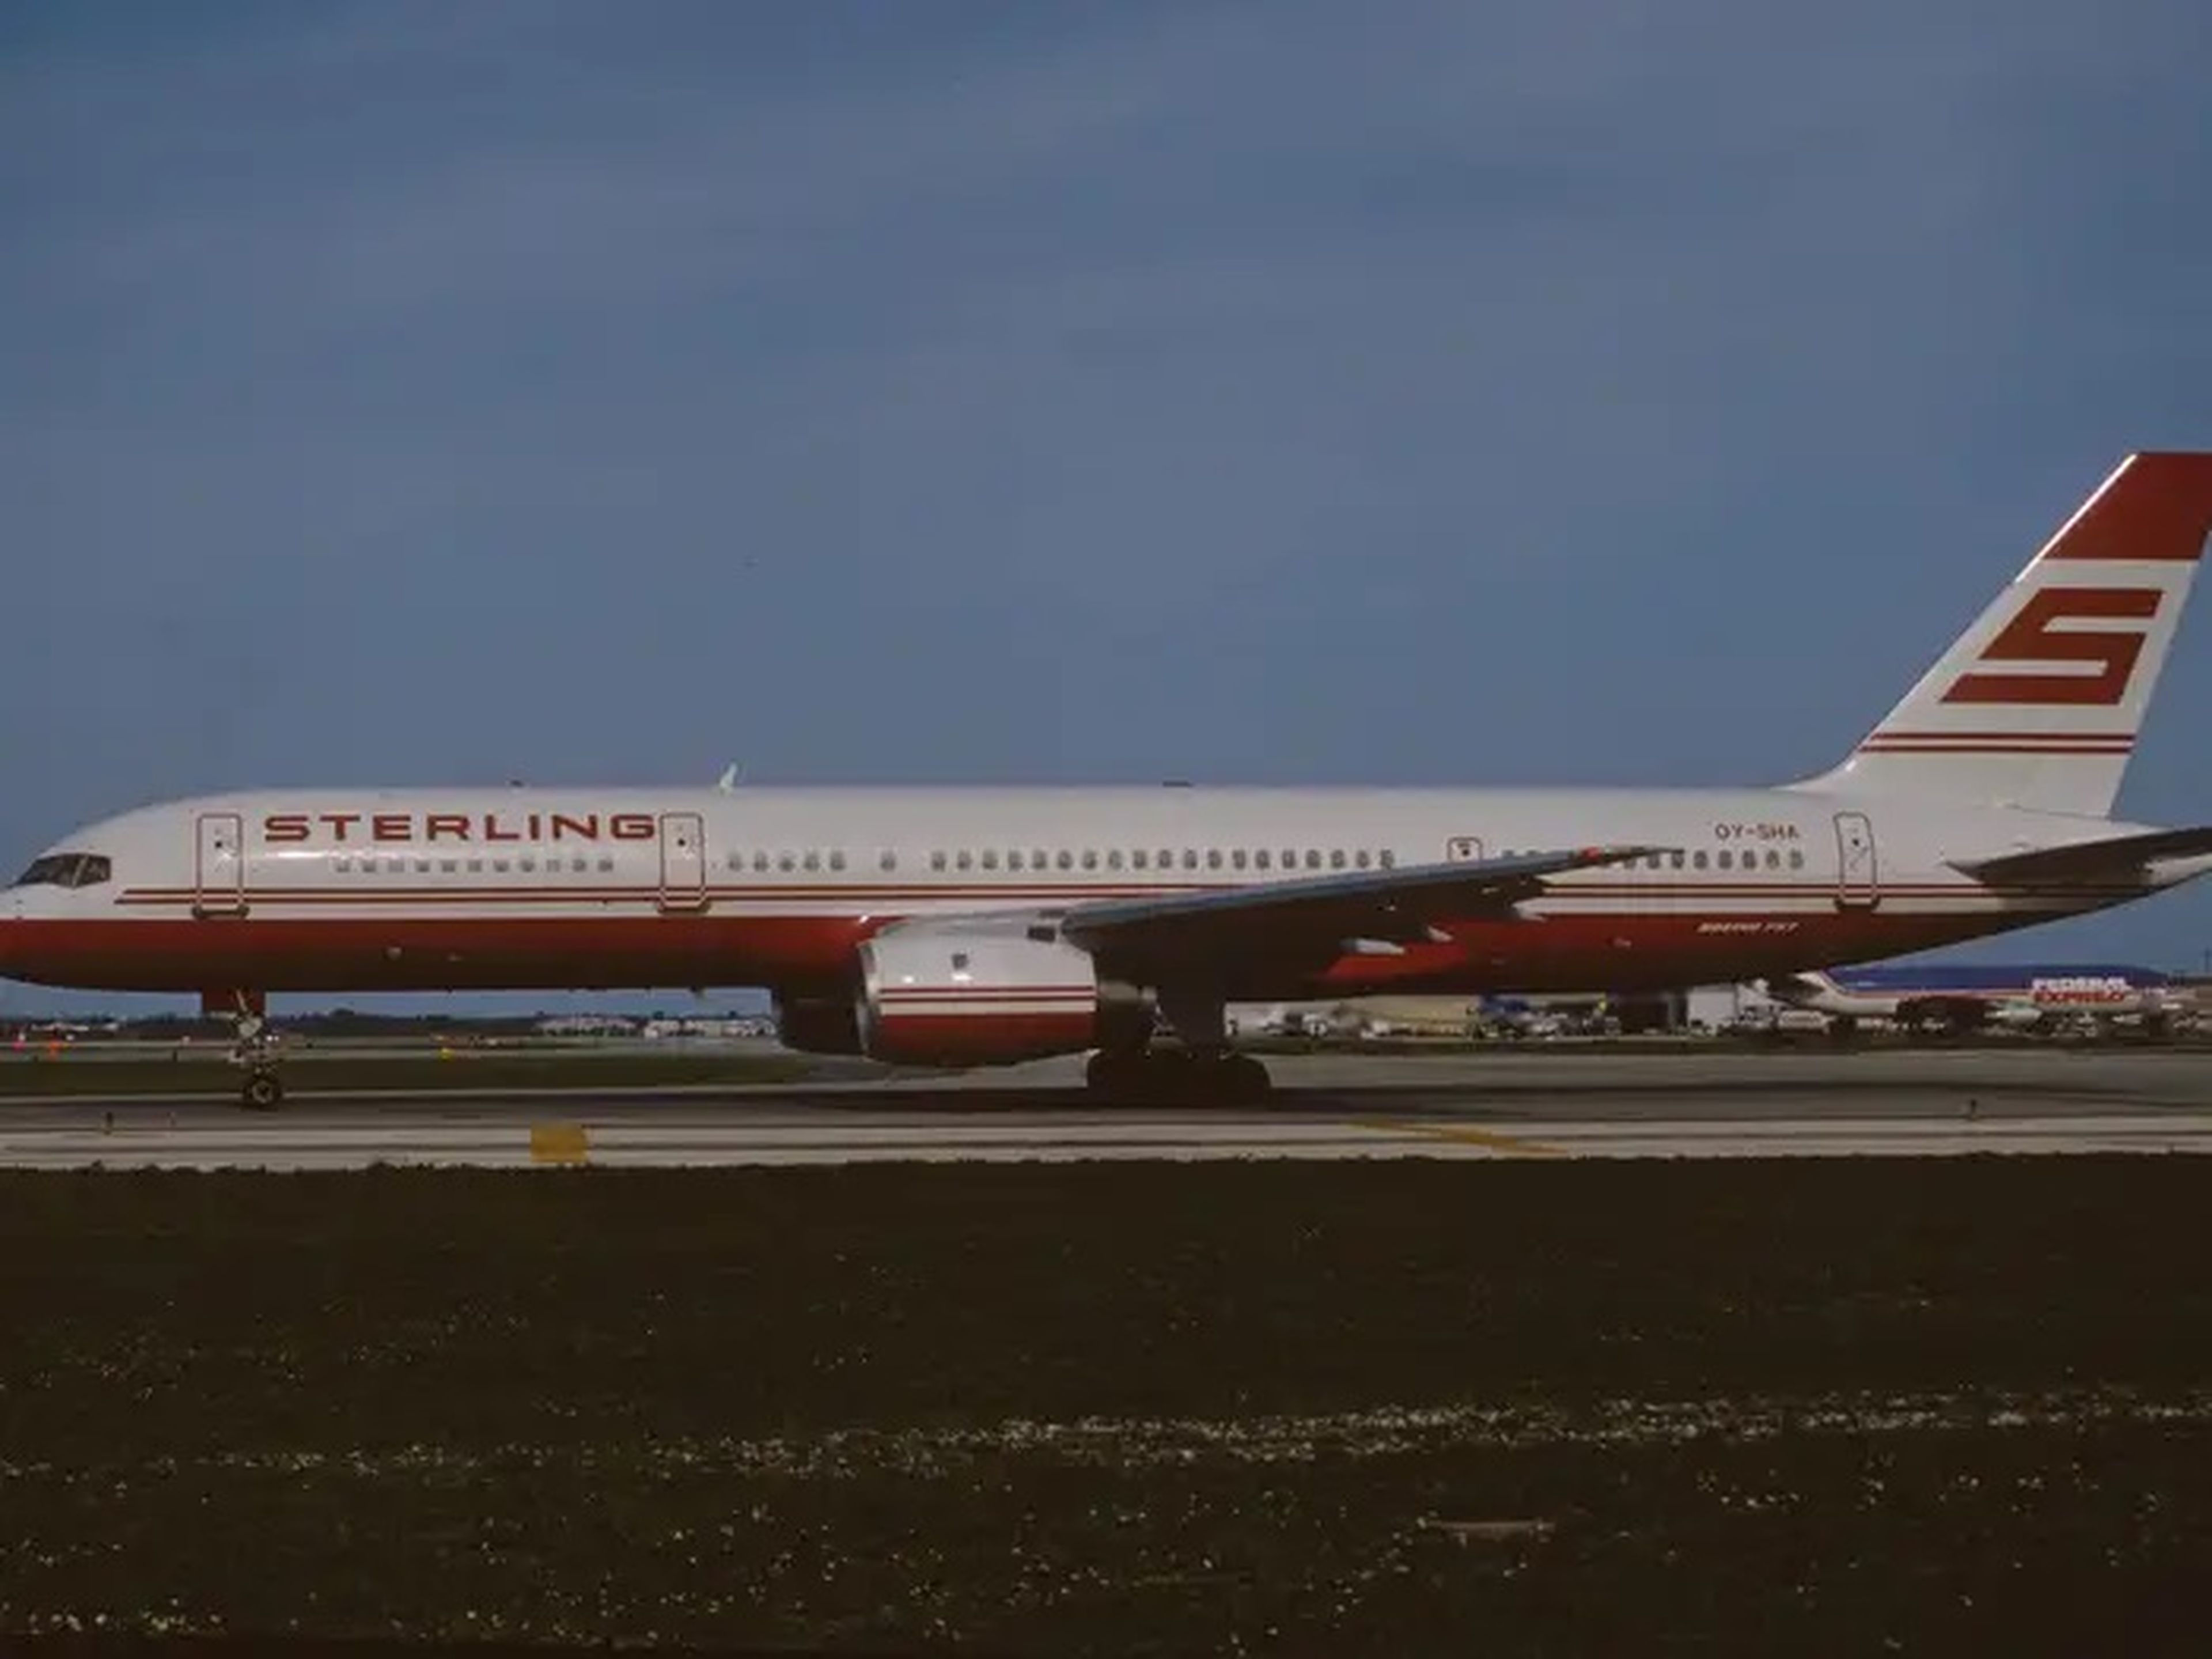 El avión 757 de Trump cuando volaba para Sterling Airlines